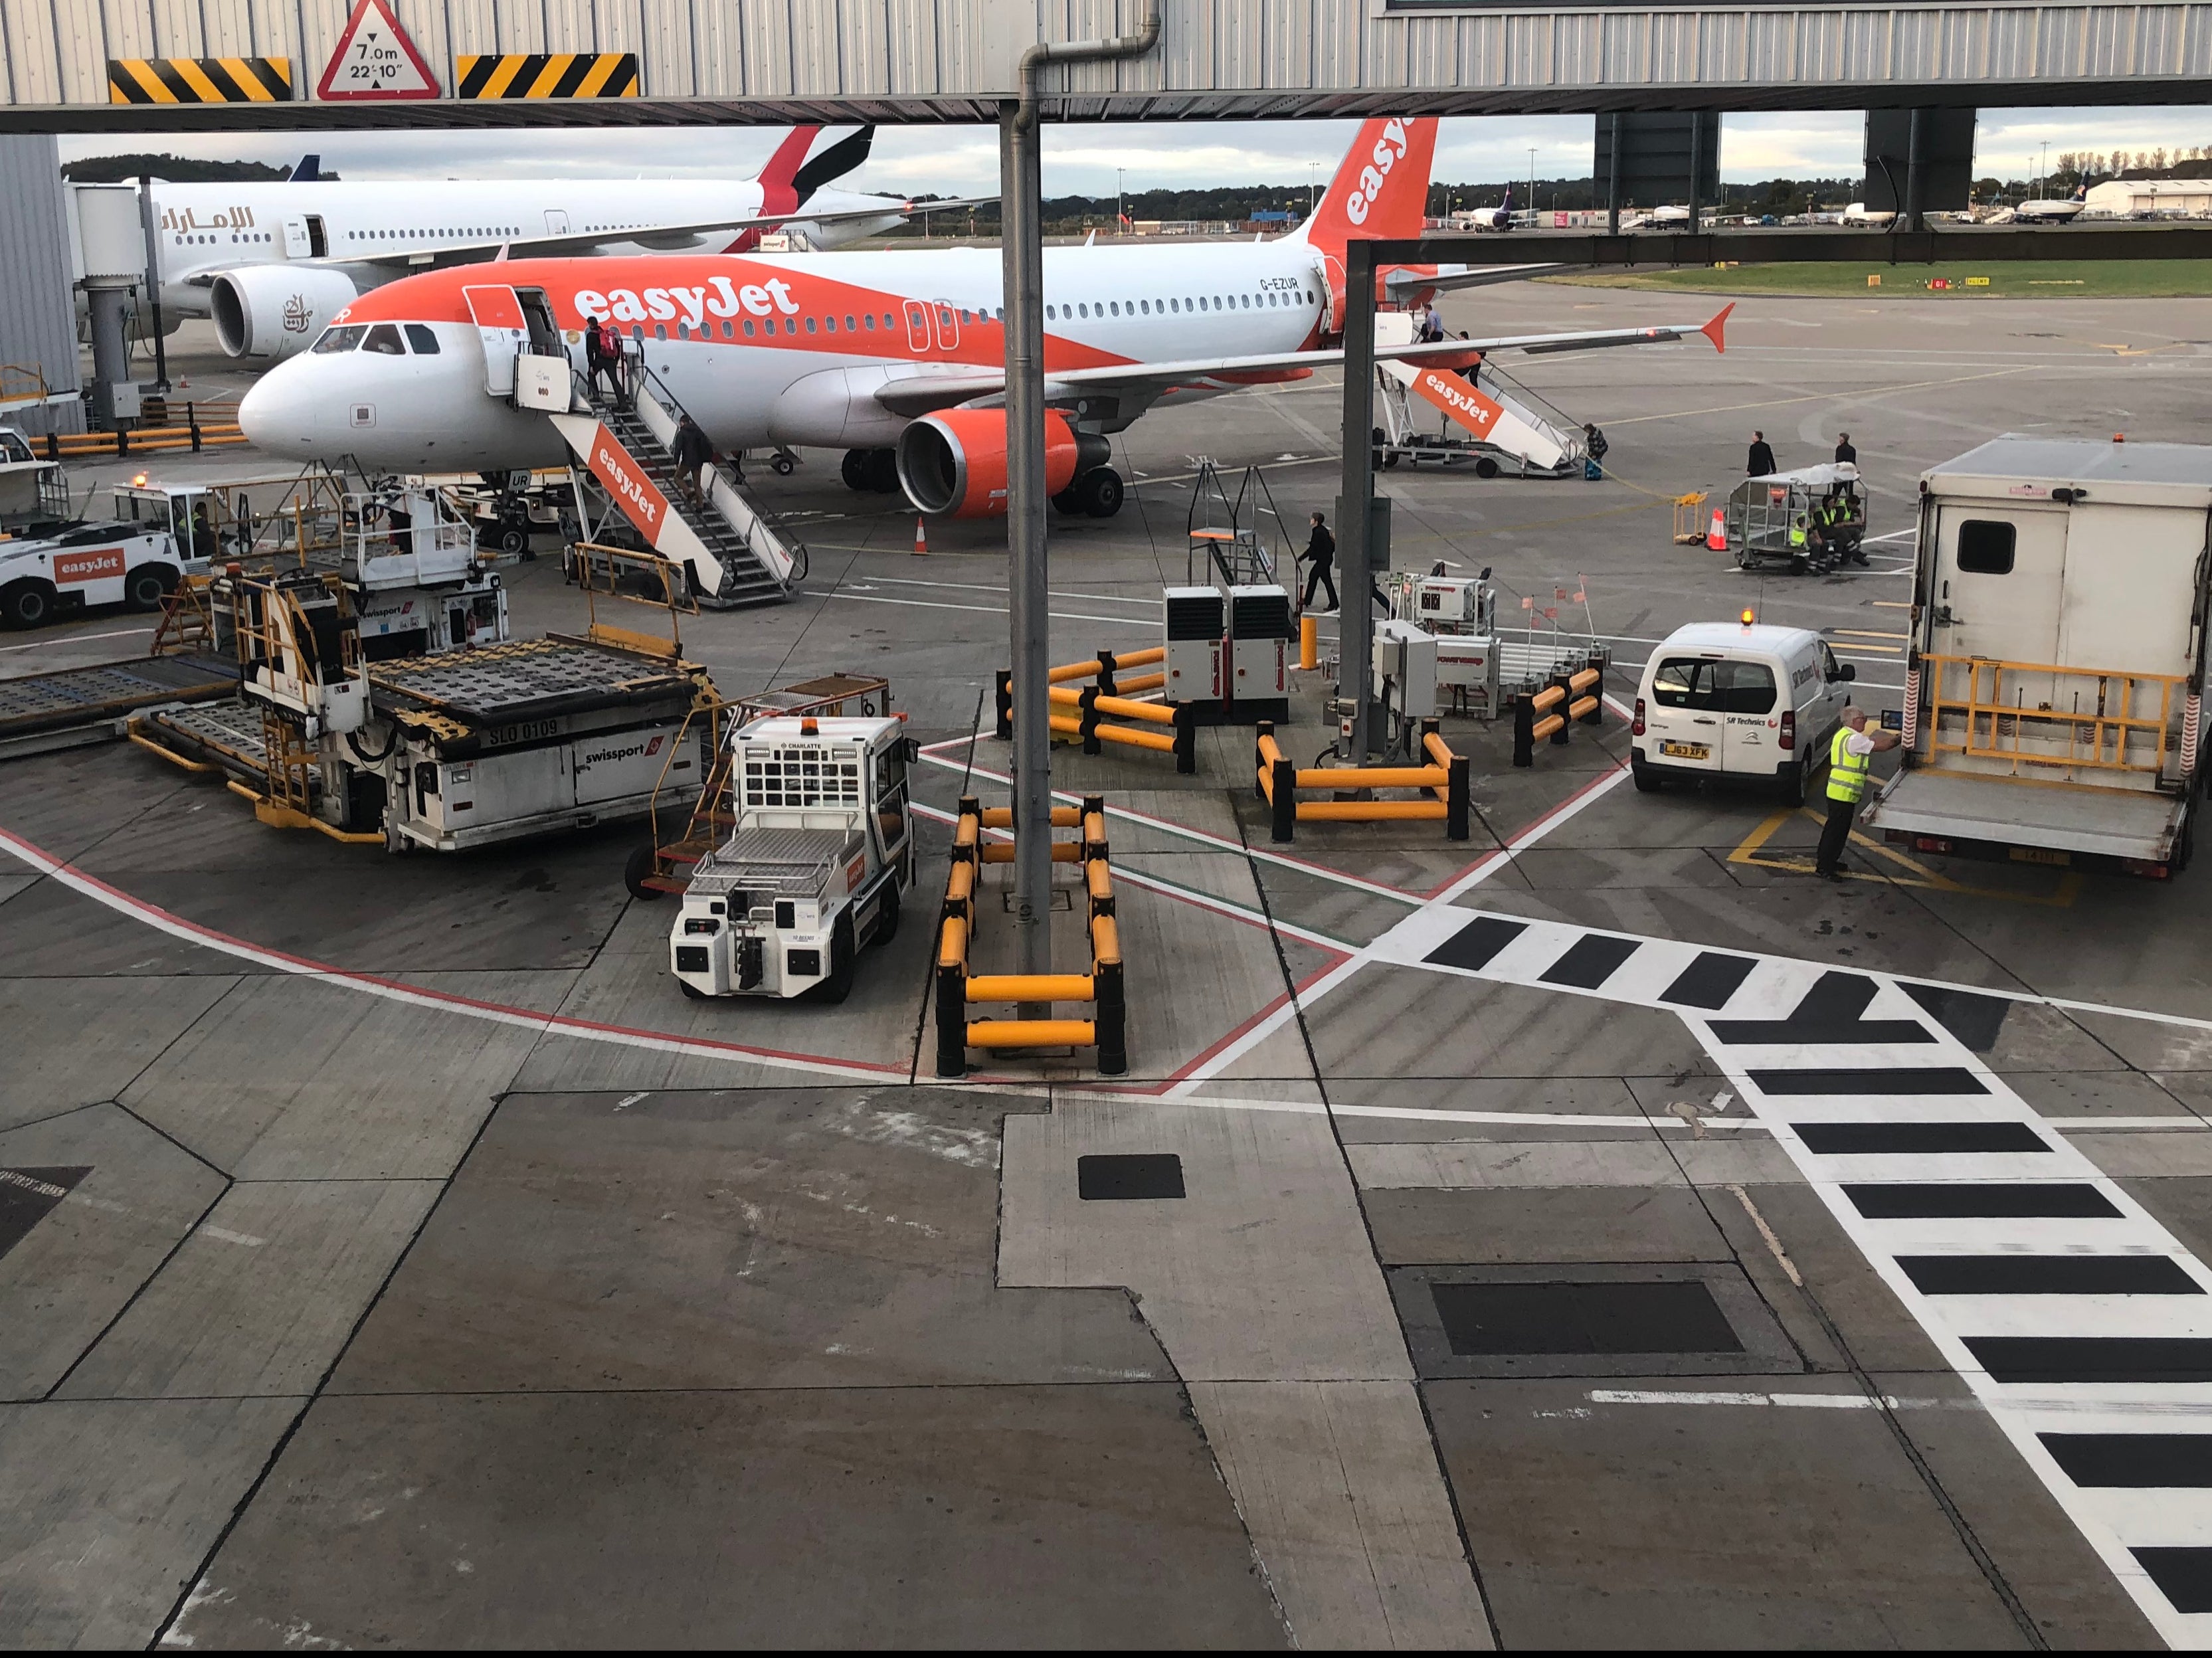 edinburgh airport arrivals departures